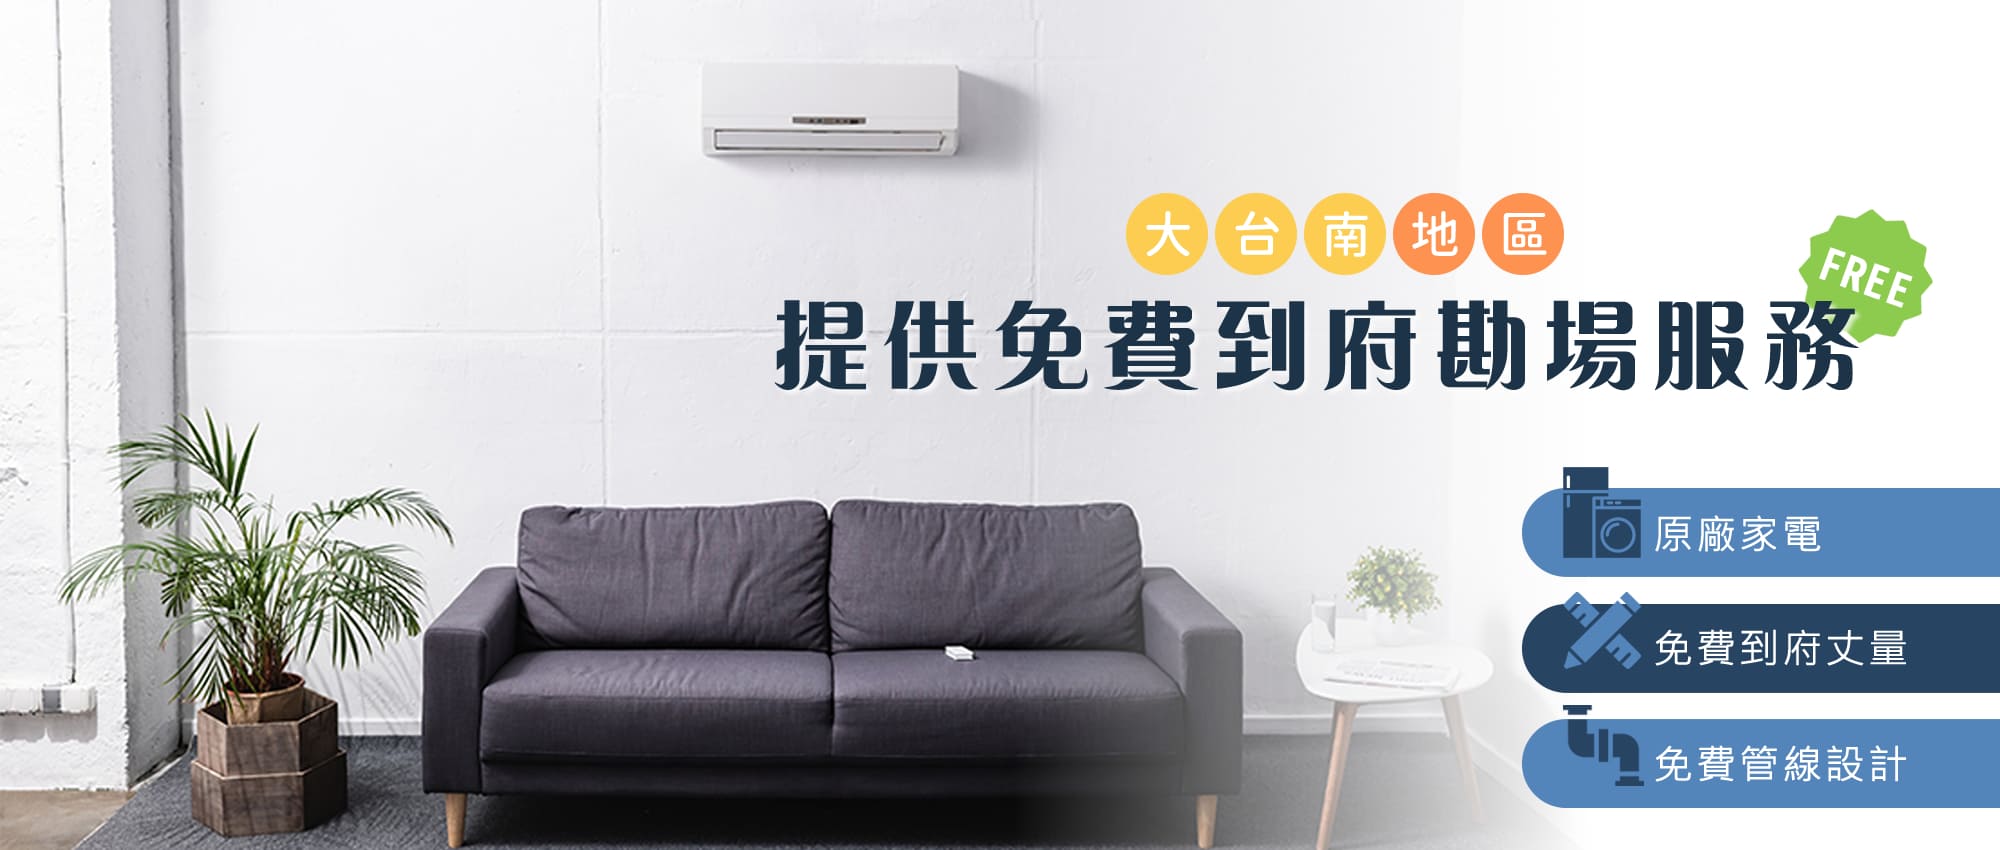 台南冷氣安裝,首盛台南電器行(首盛冷氣工程),台南冷氣維修,台南冷氣清洗